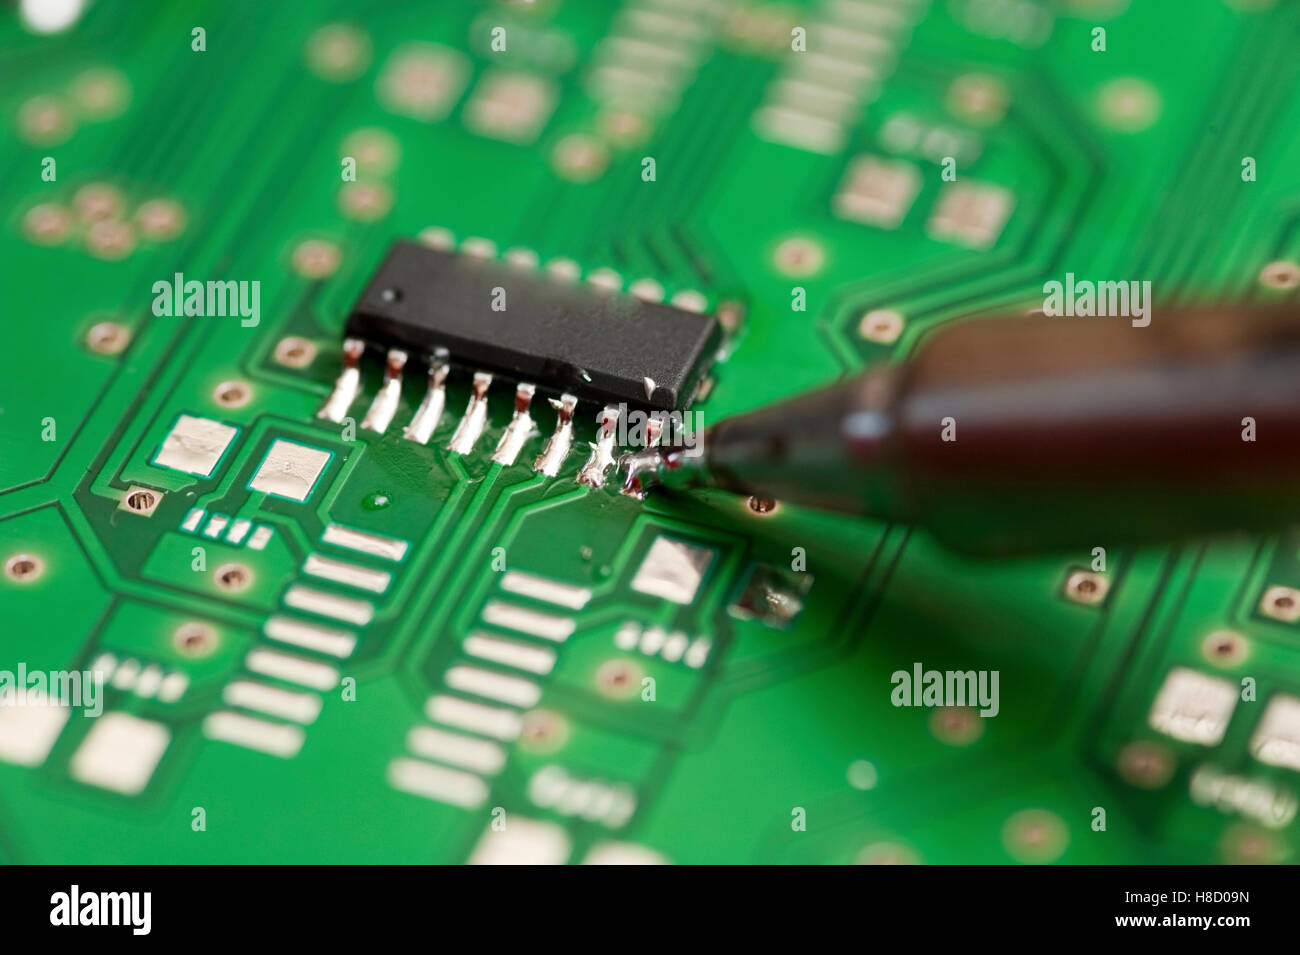 Ein elektronisches Bauteil auf eine Platine Löten Stockfotografie - Alamy